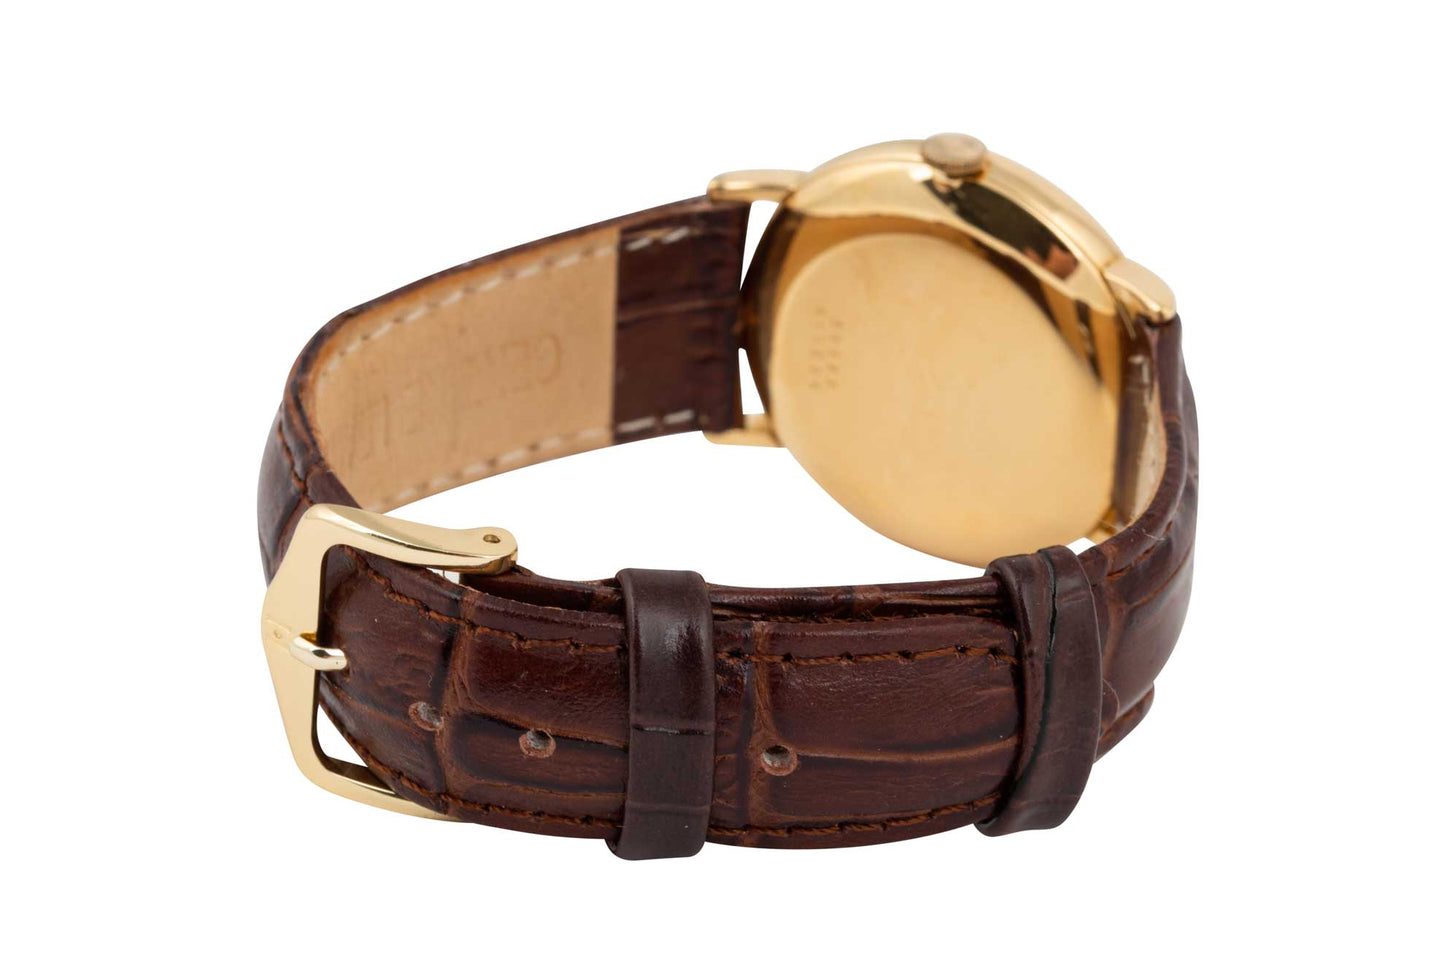 18ct gold Vintage Wrist Watch